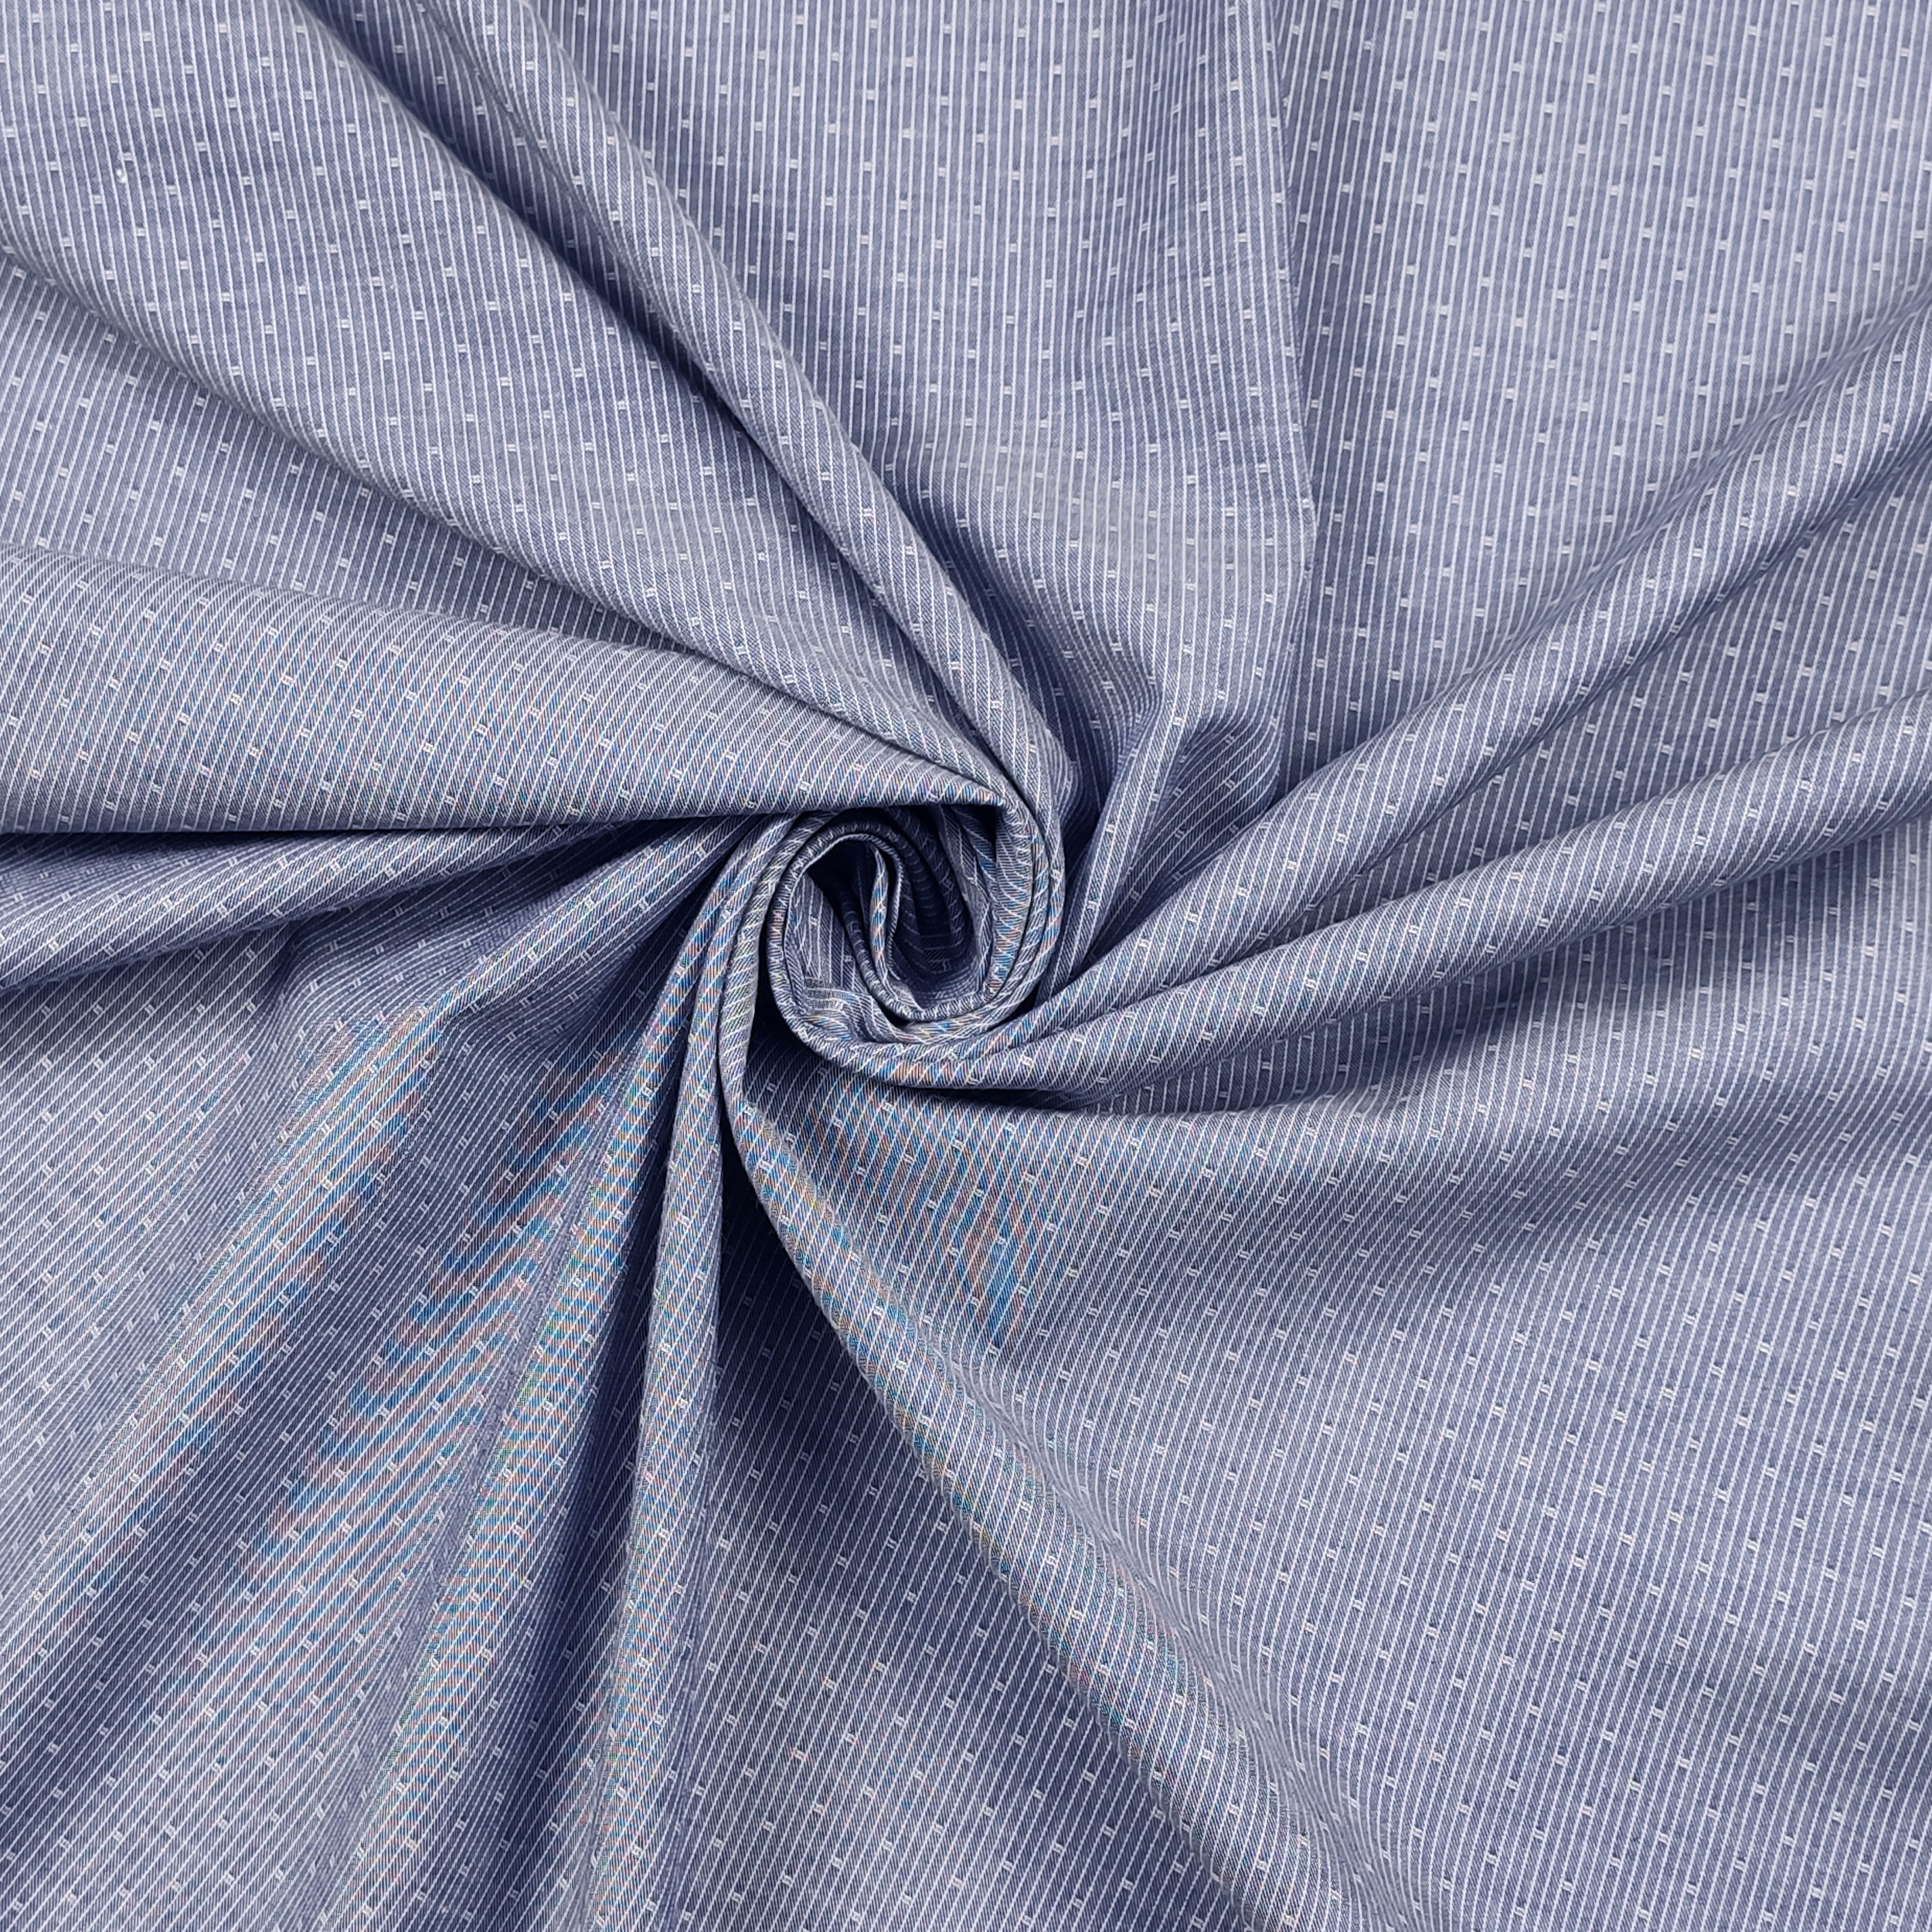 camicia in cotone blu microfantasia